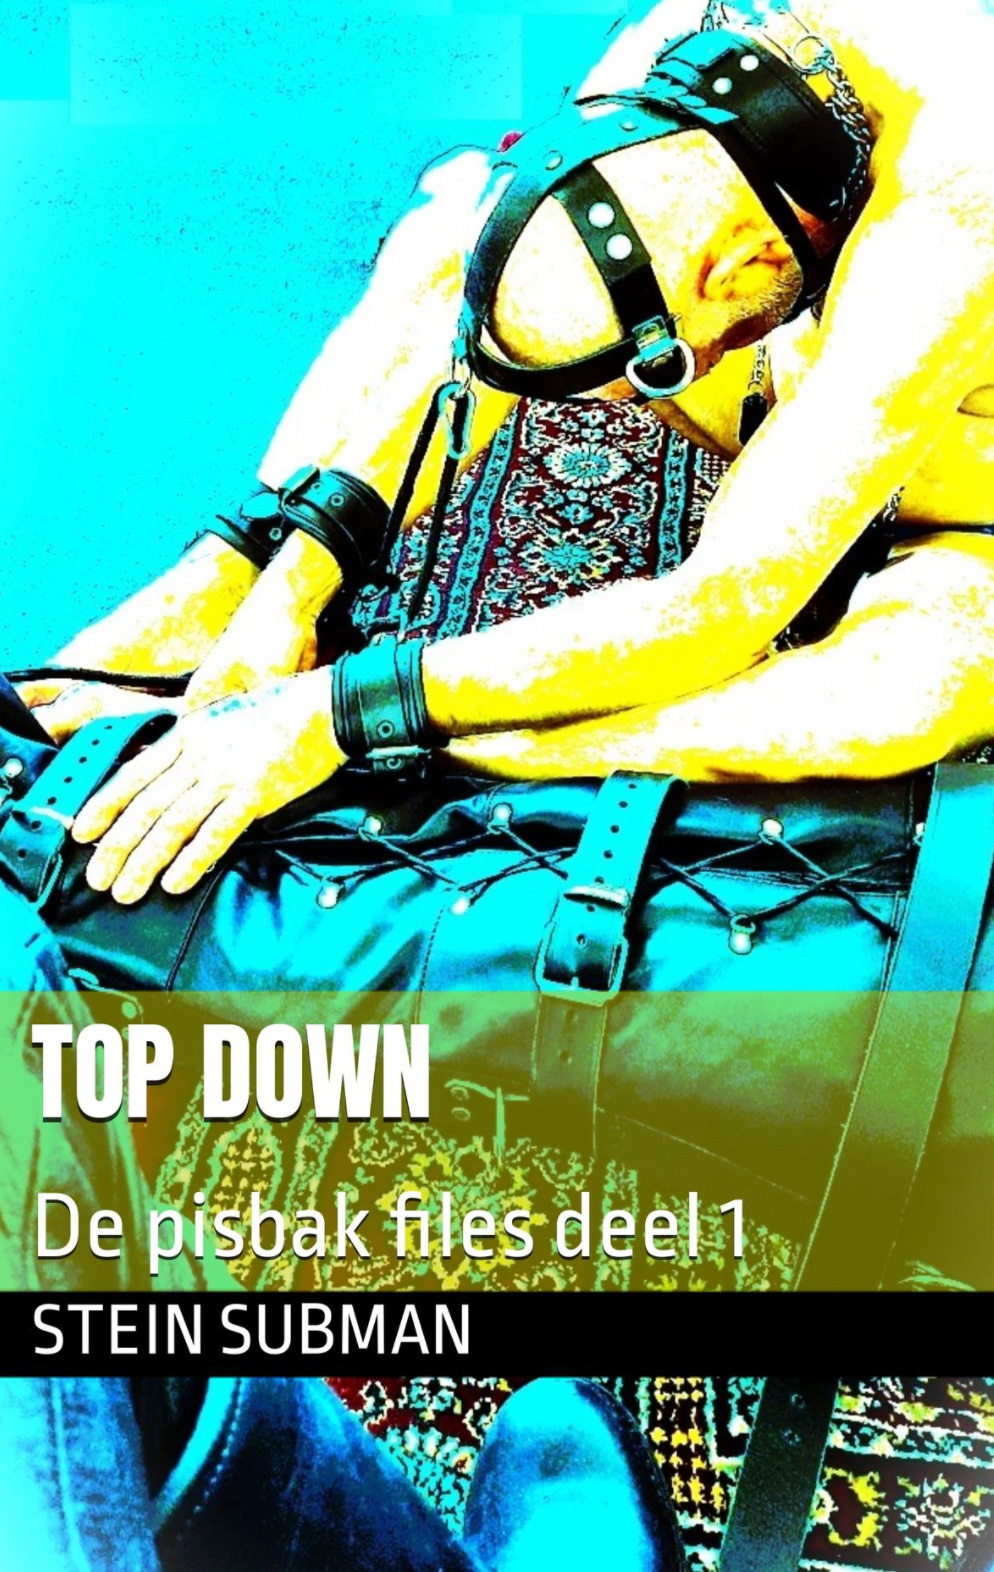 Top Down: De pisbak files deel 1